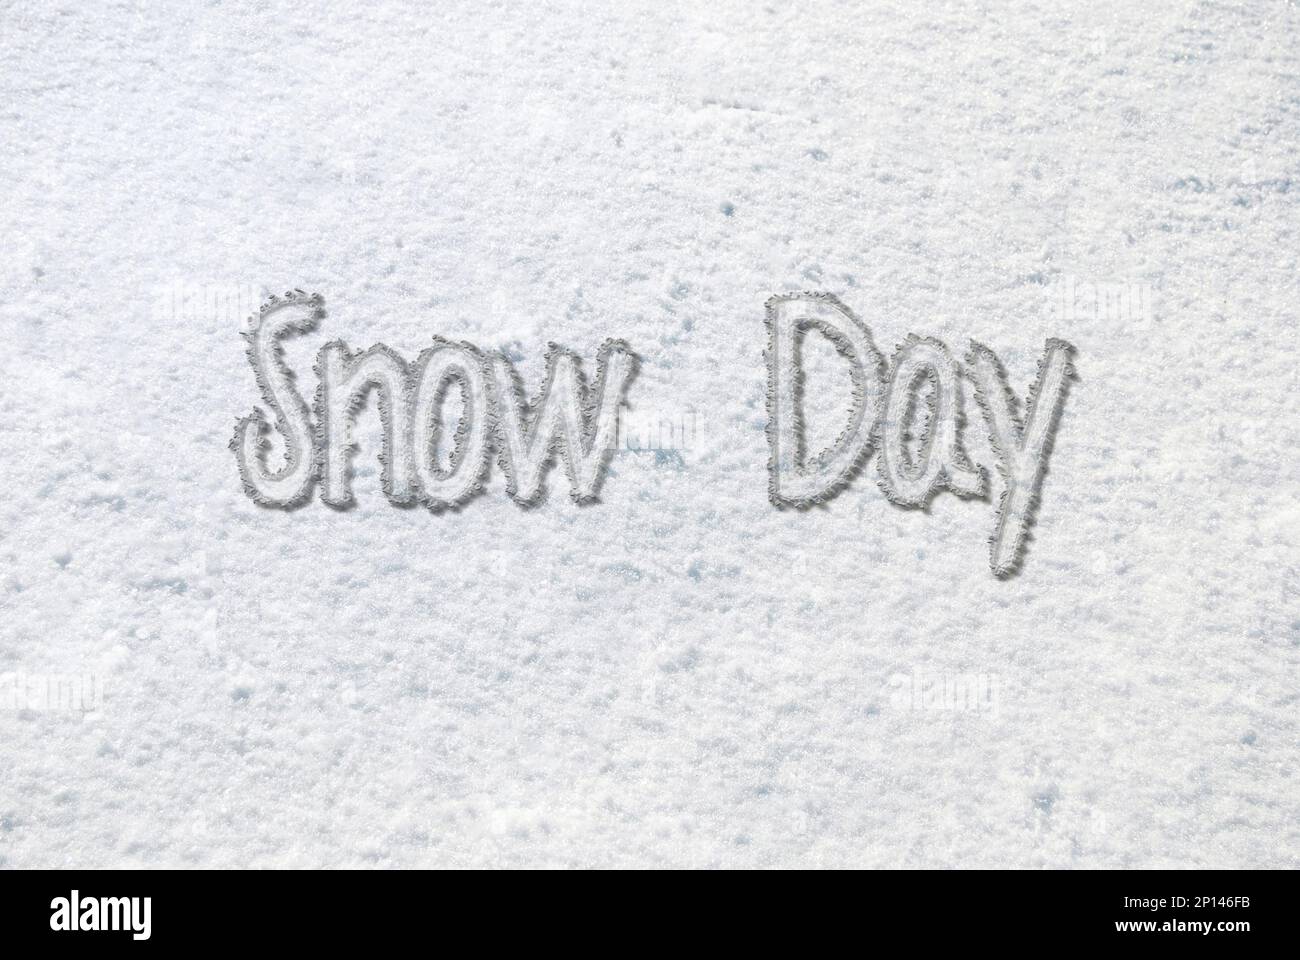 Texto del día de la nieve en la nieve blanca en el suelo Foto de stock